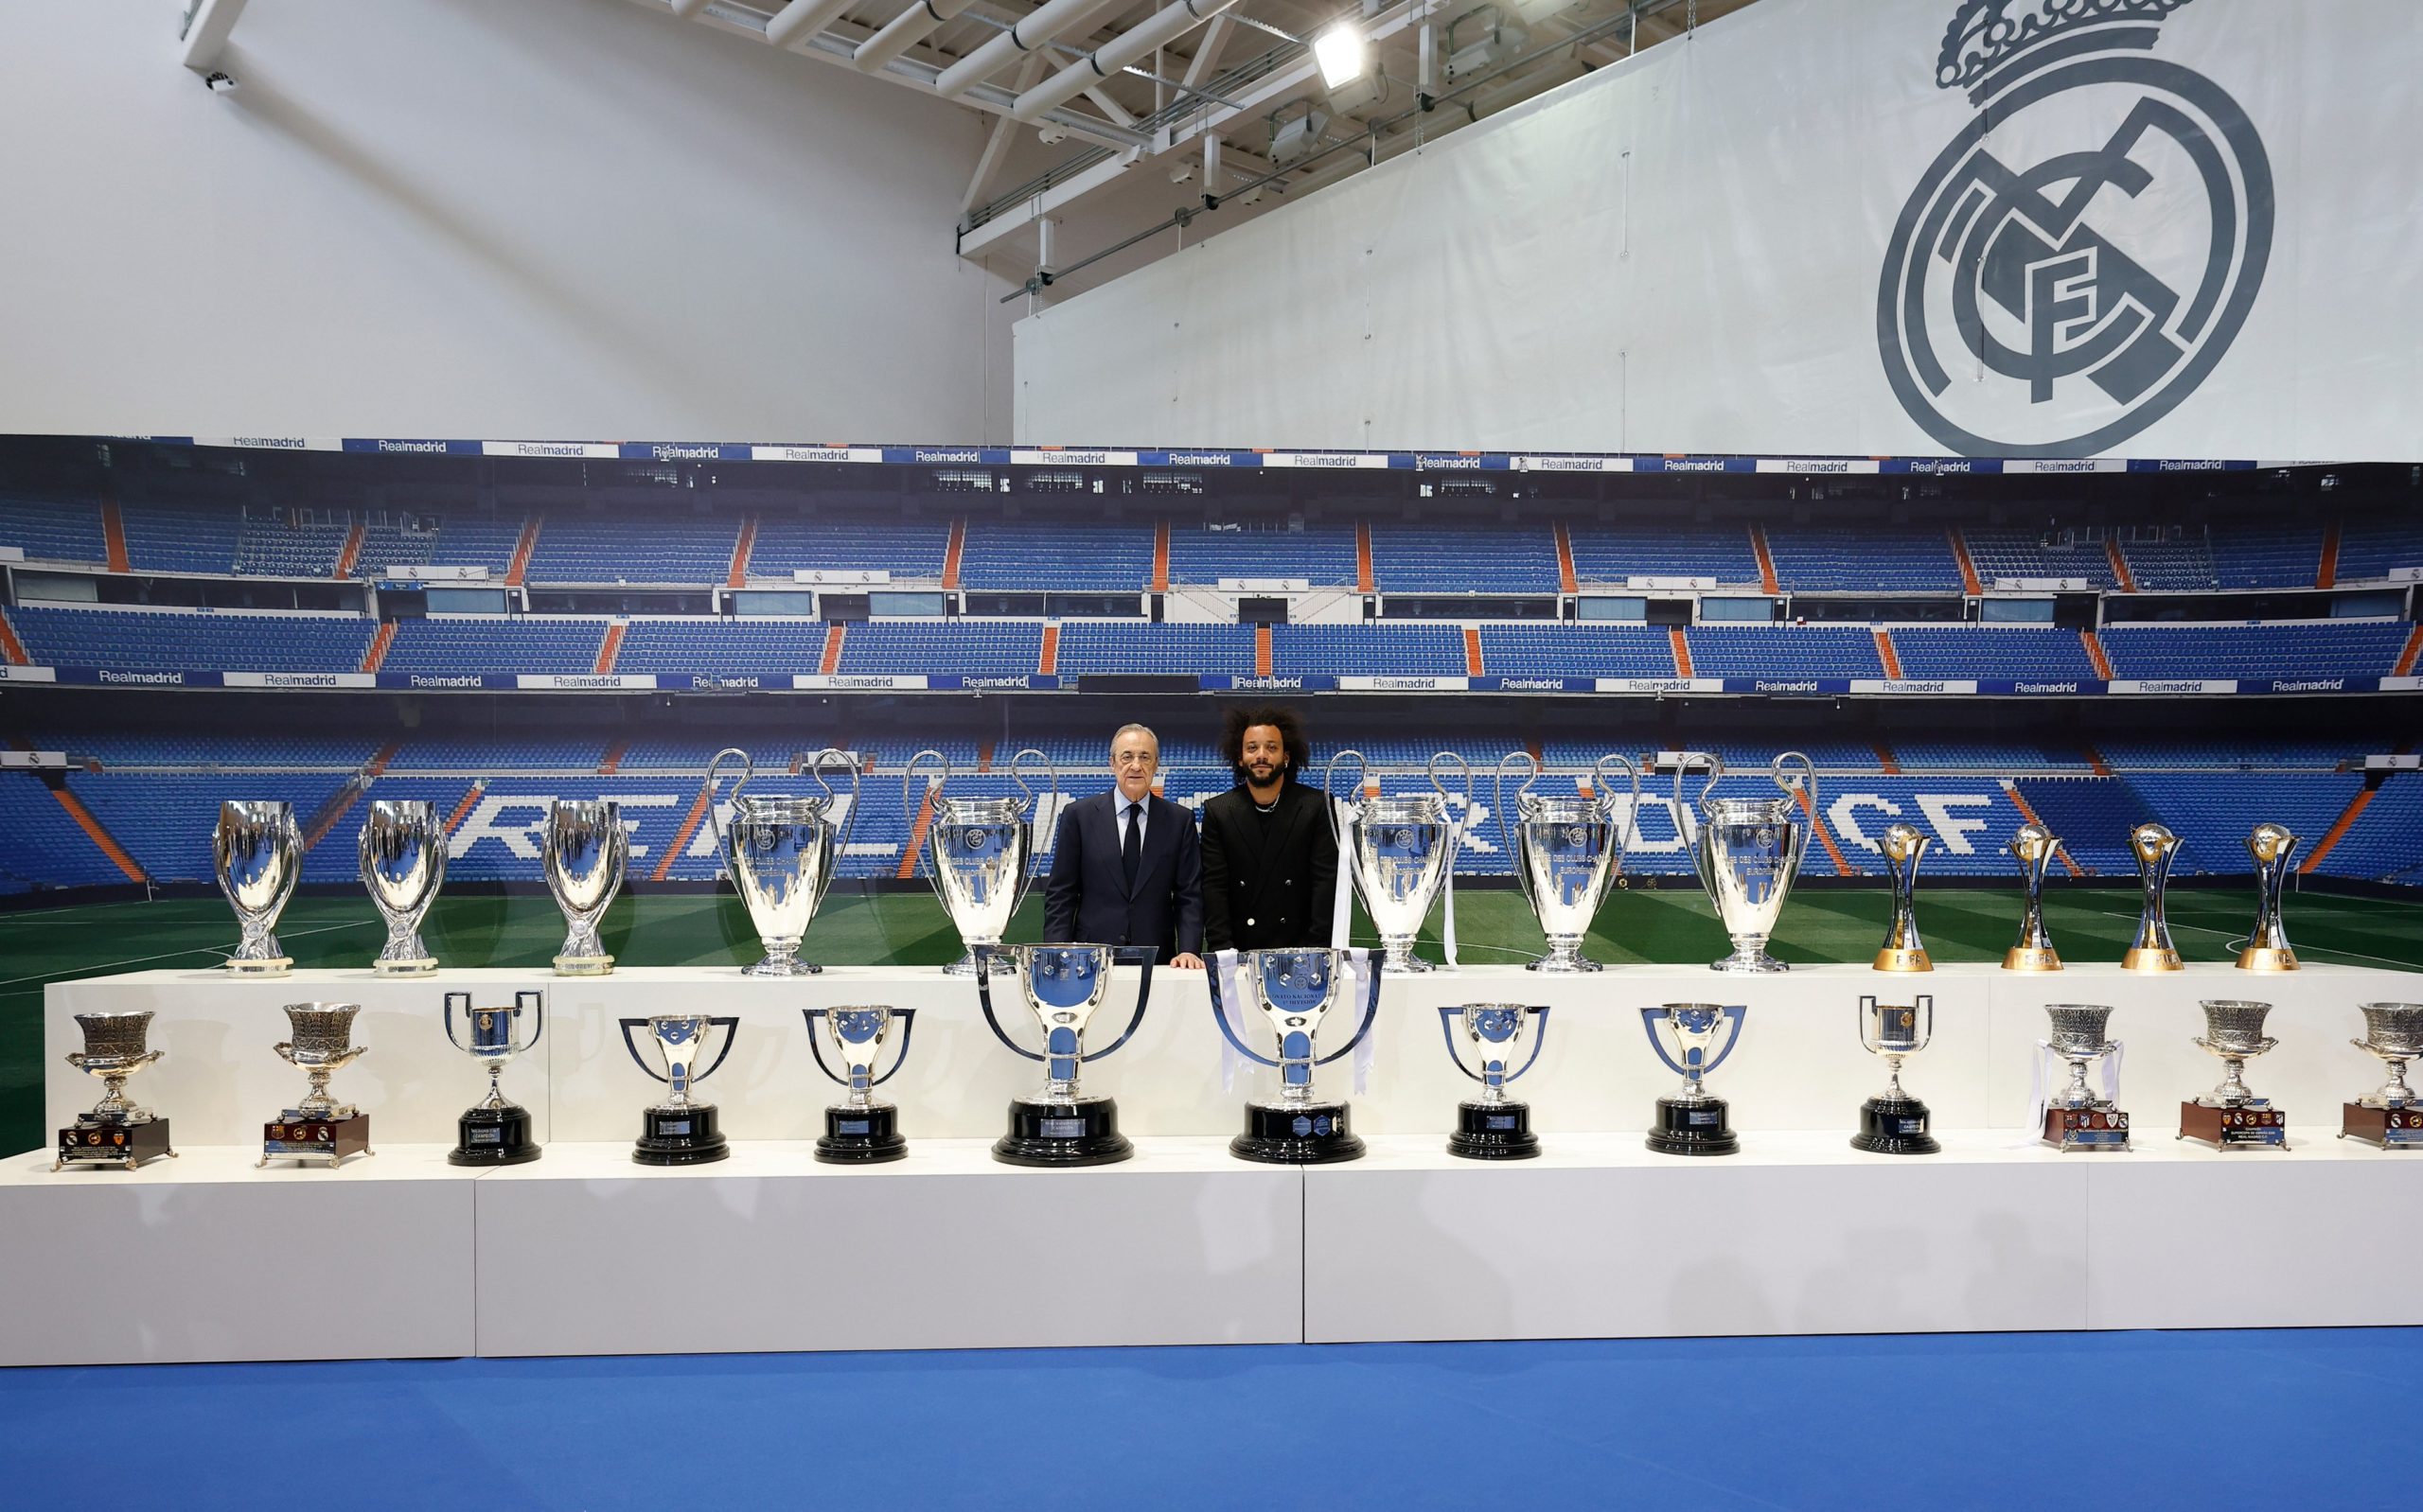 Adiós a una leyenda: Marcelo se despidió del Real Madrid tras 16 años, 546 partidos y 25 títulos